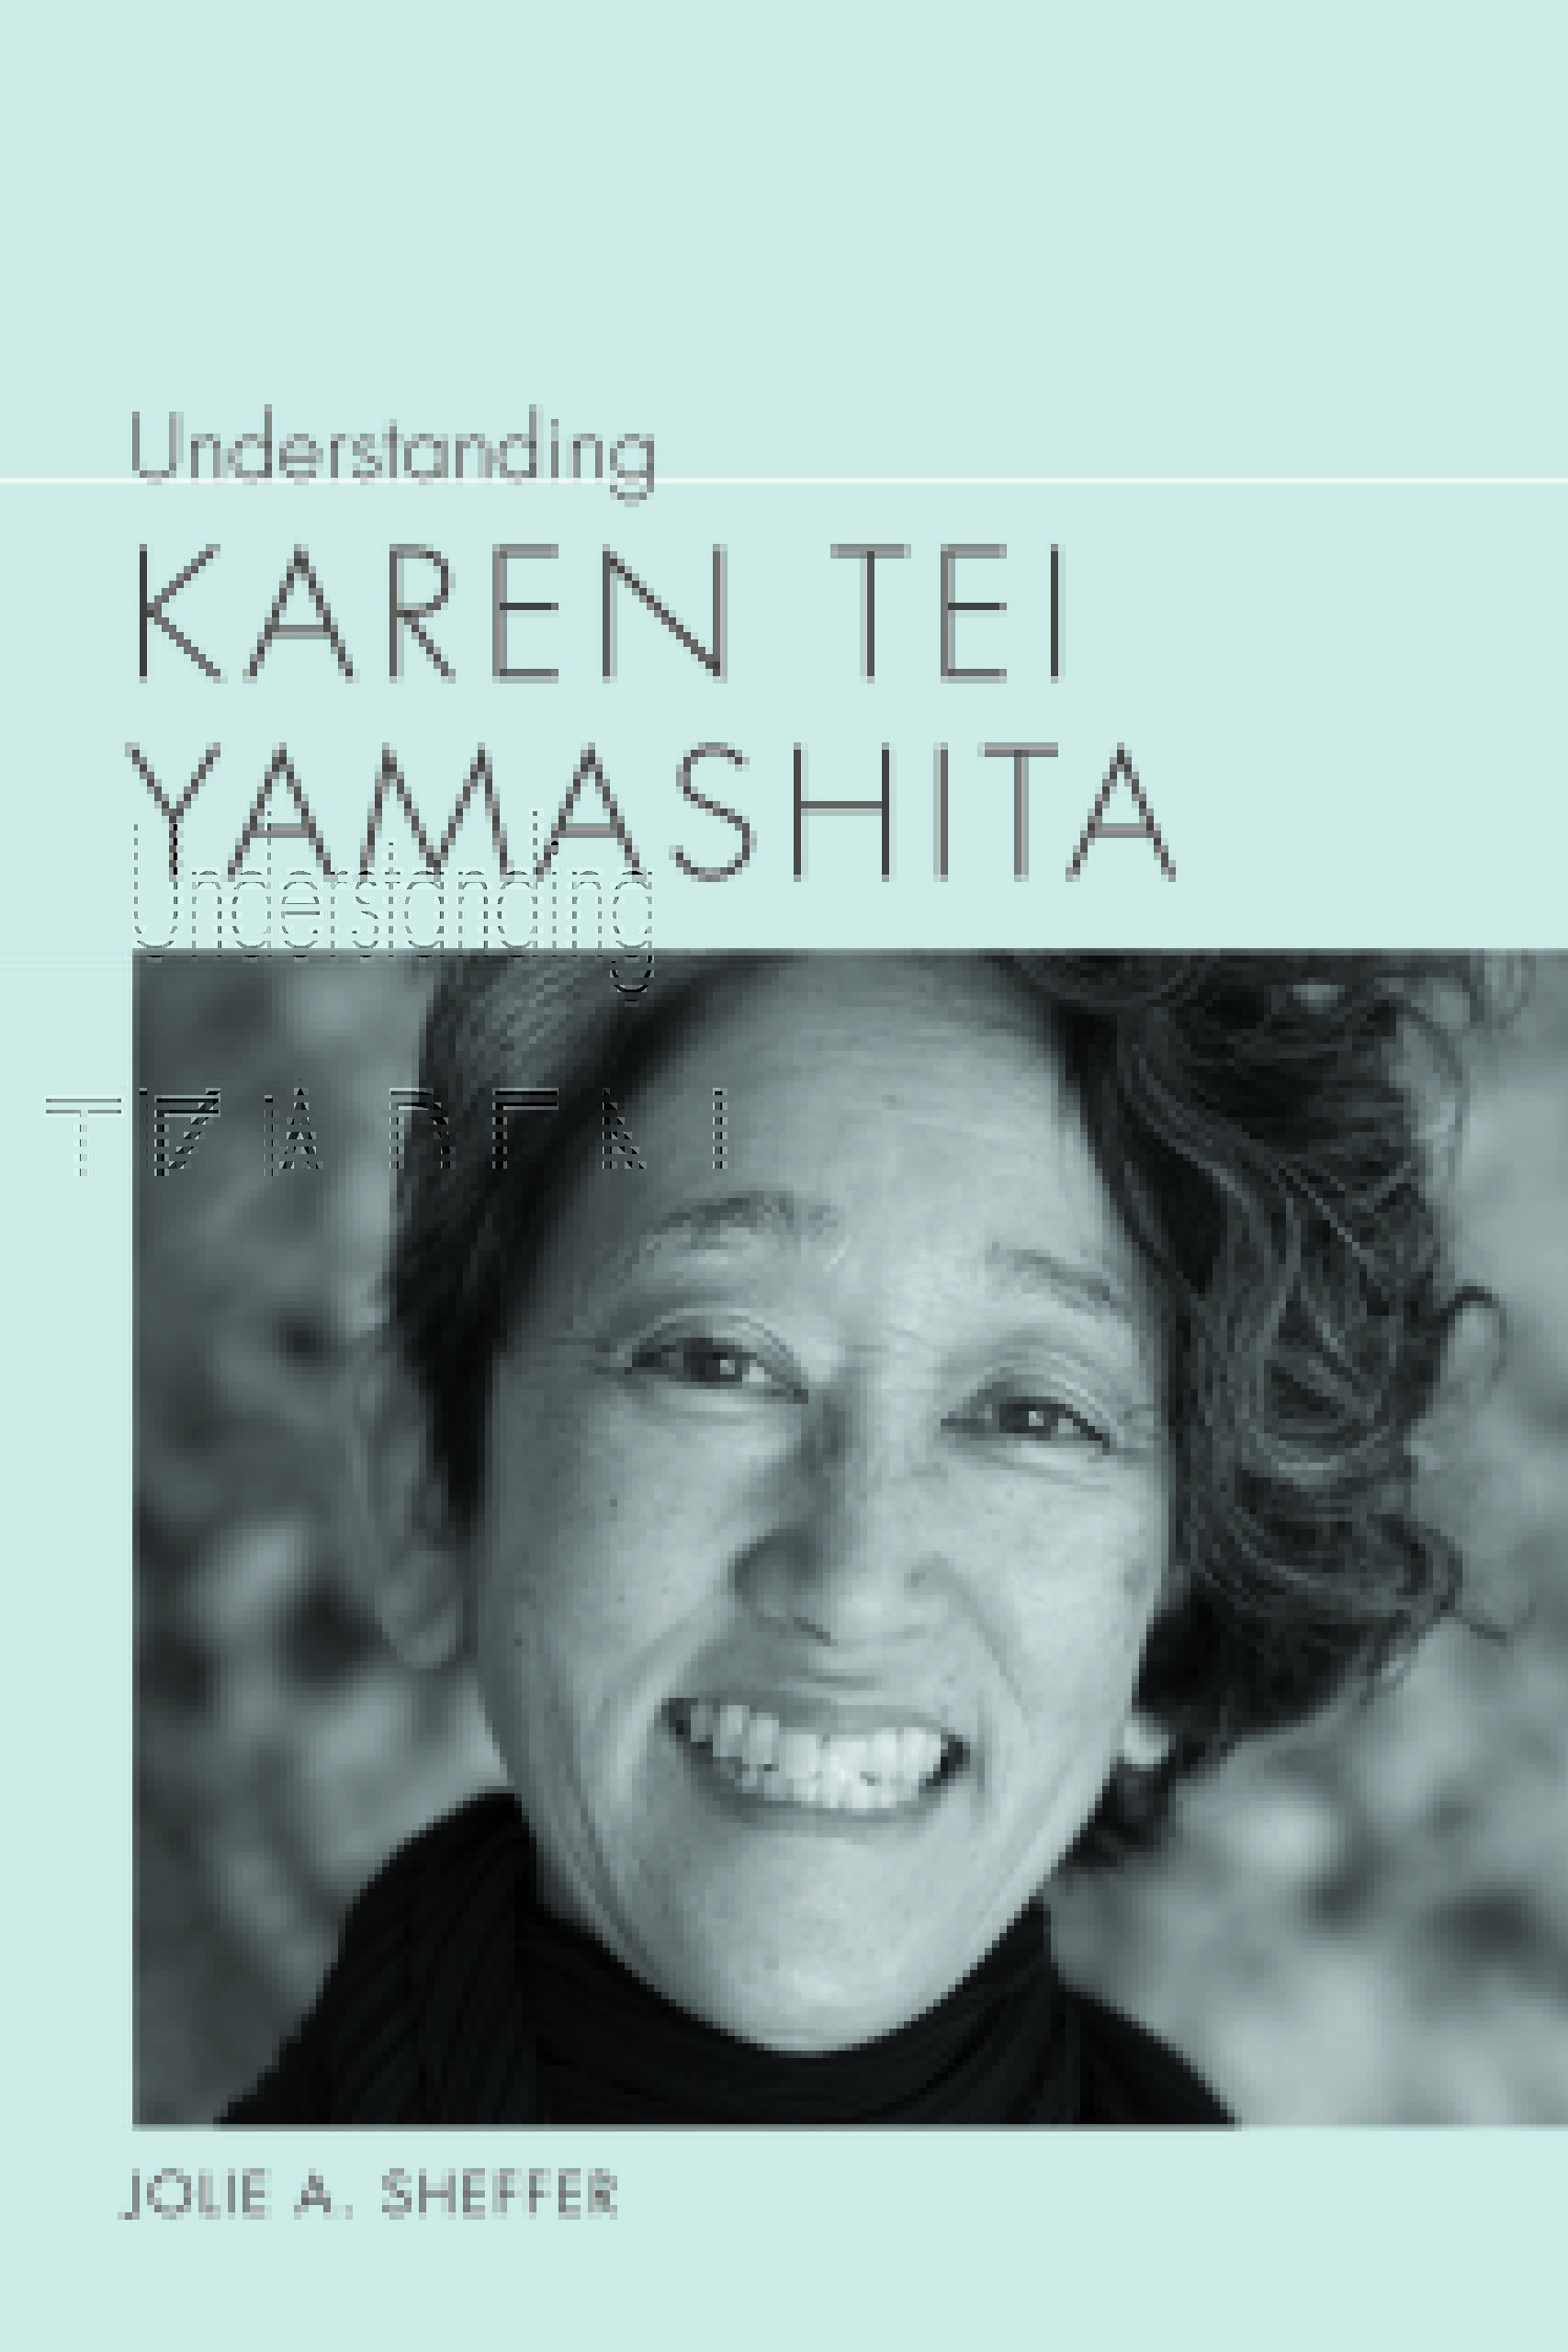 The cover of Understanding Karen Tei Yamashita